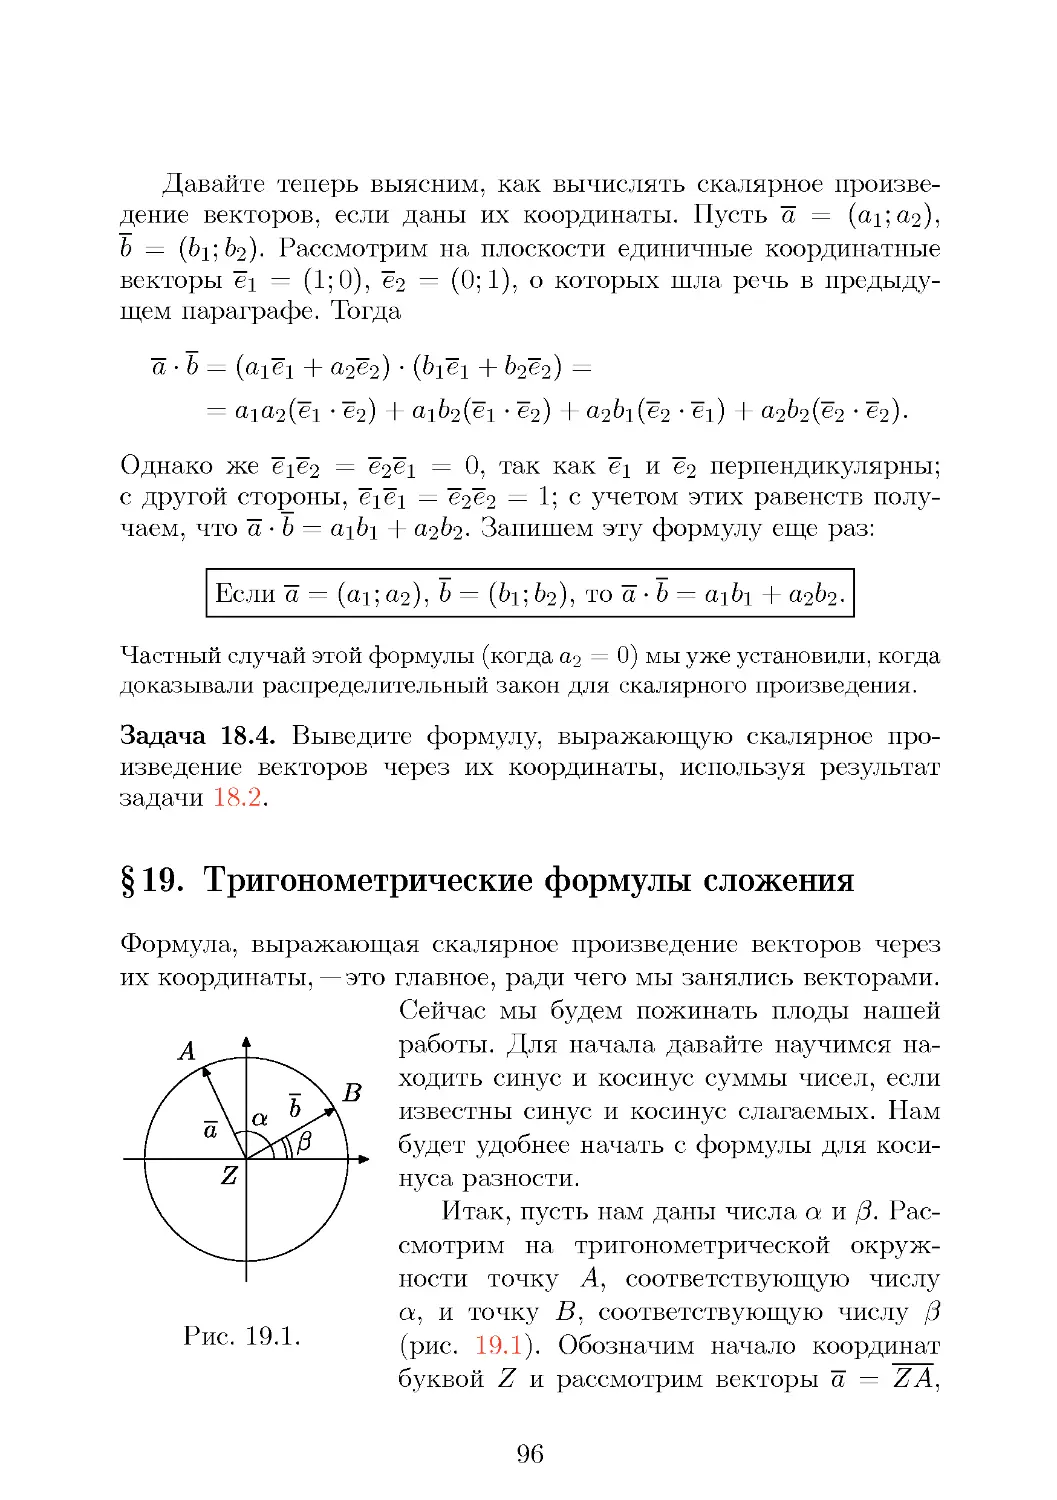 Тригонометрические формулы сложения